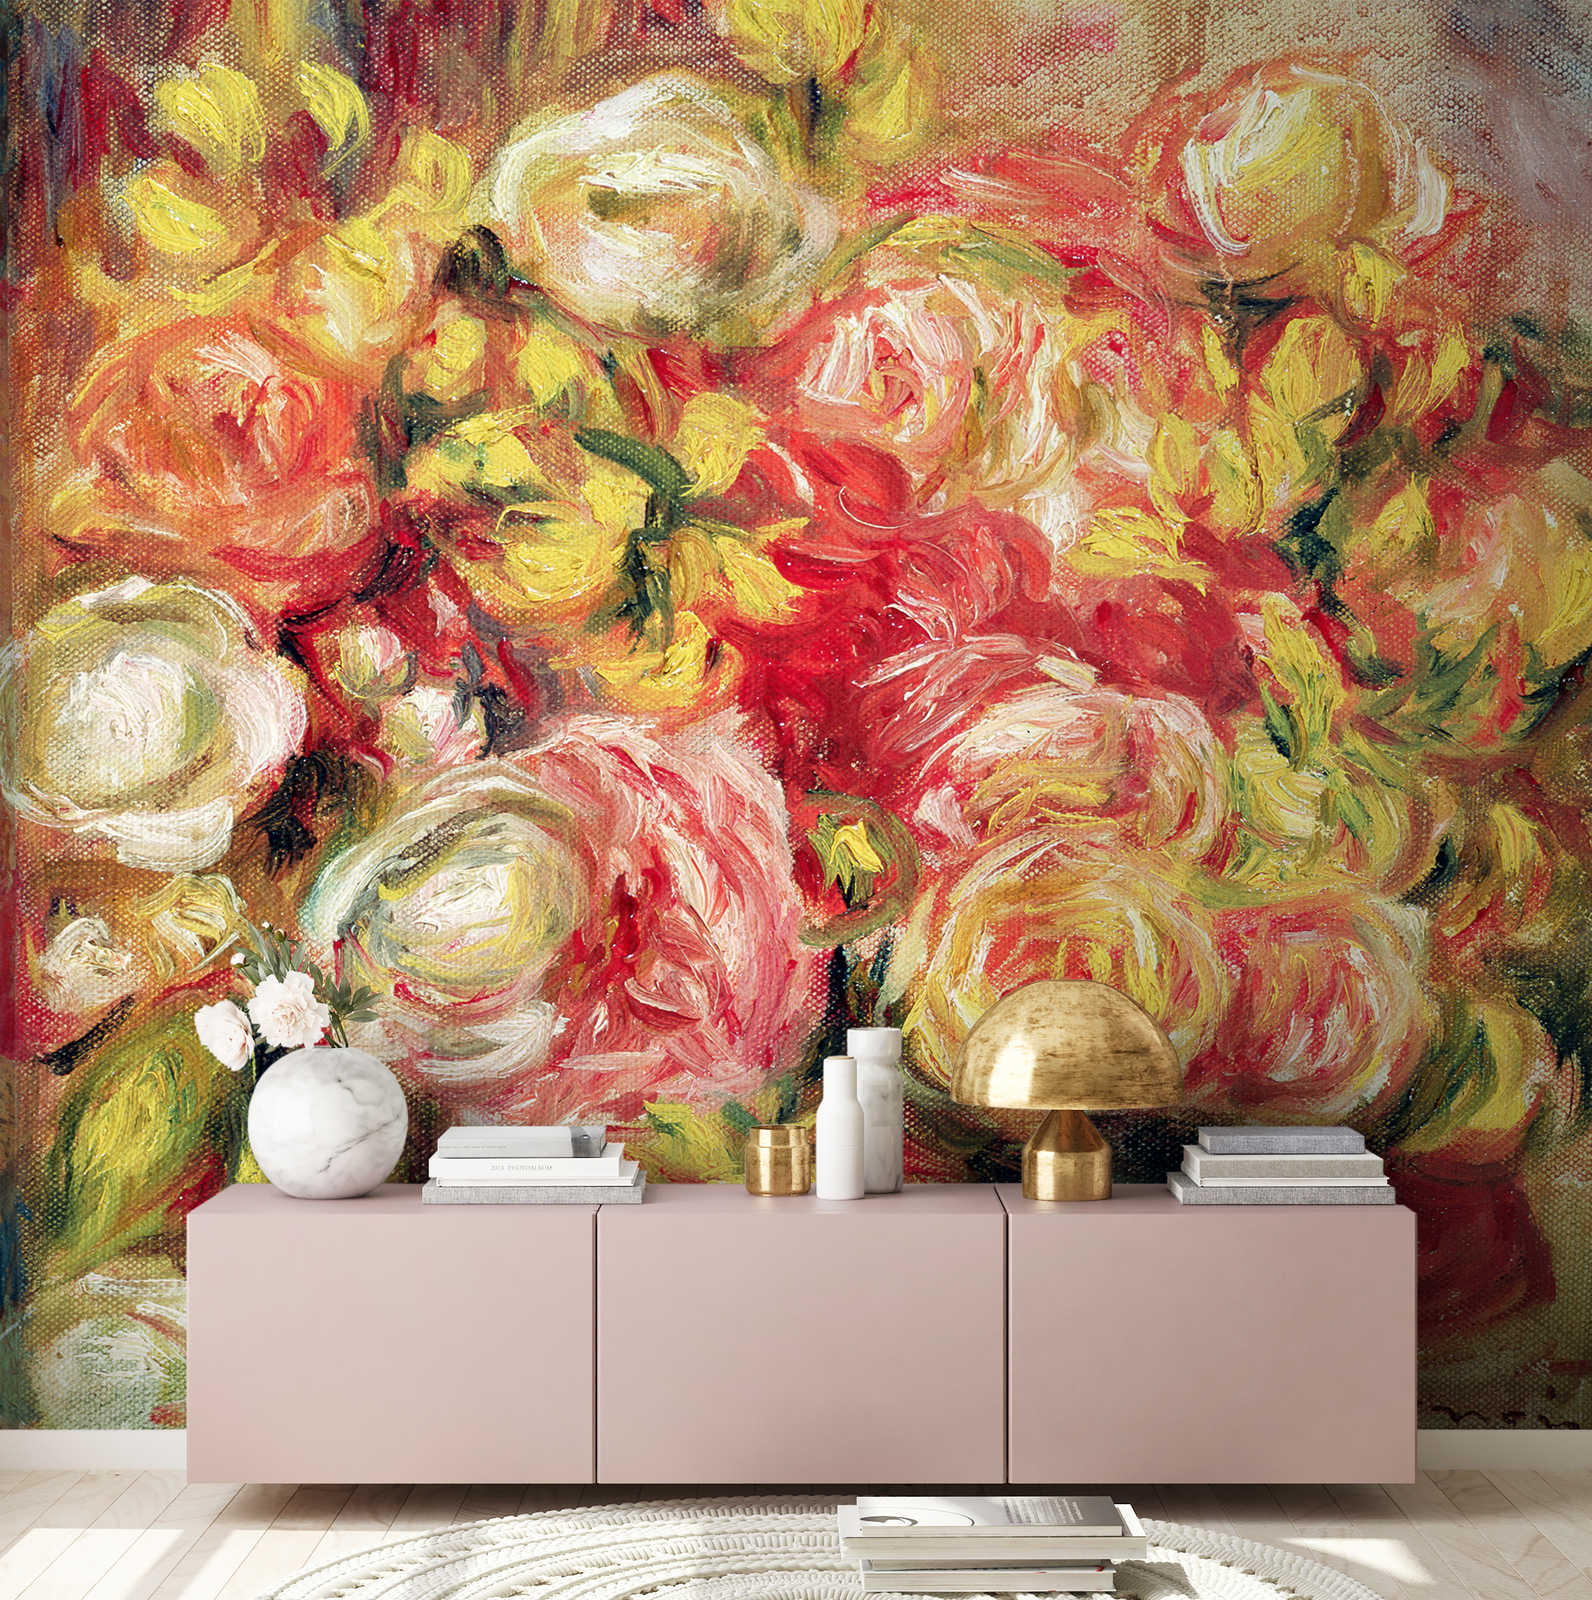             Roos in een vaas" muurschildering van Pierre Auguste Renoir
        